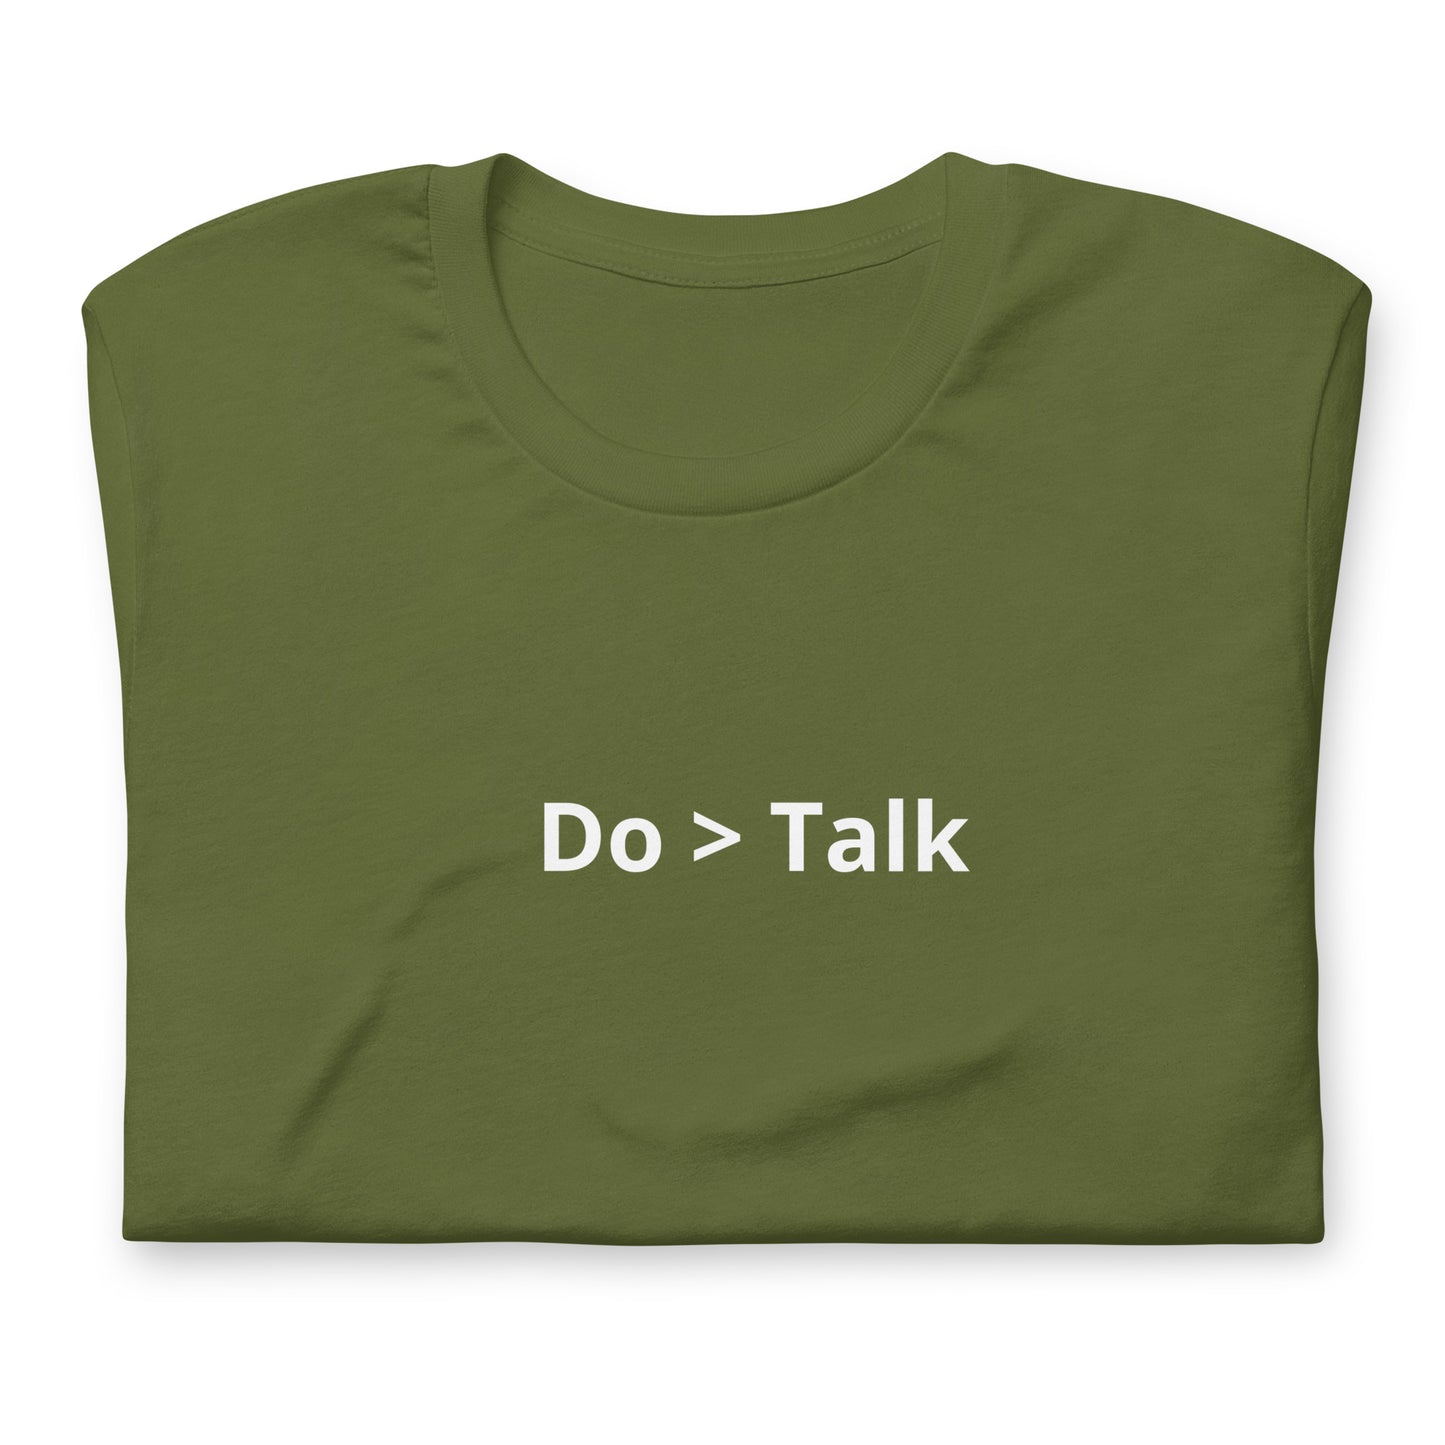 Do > Talk Unisex T-Shirt